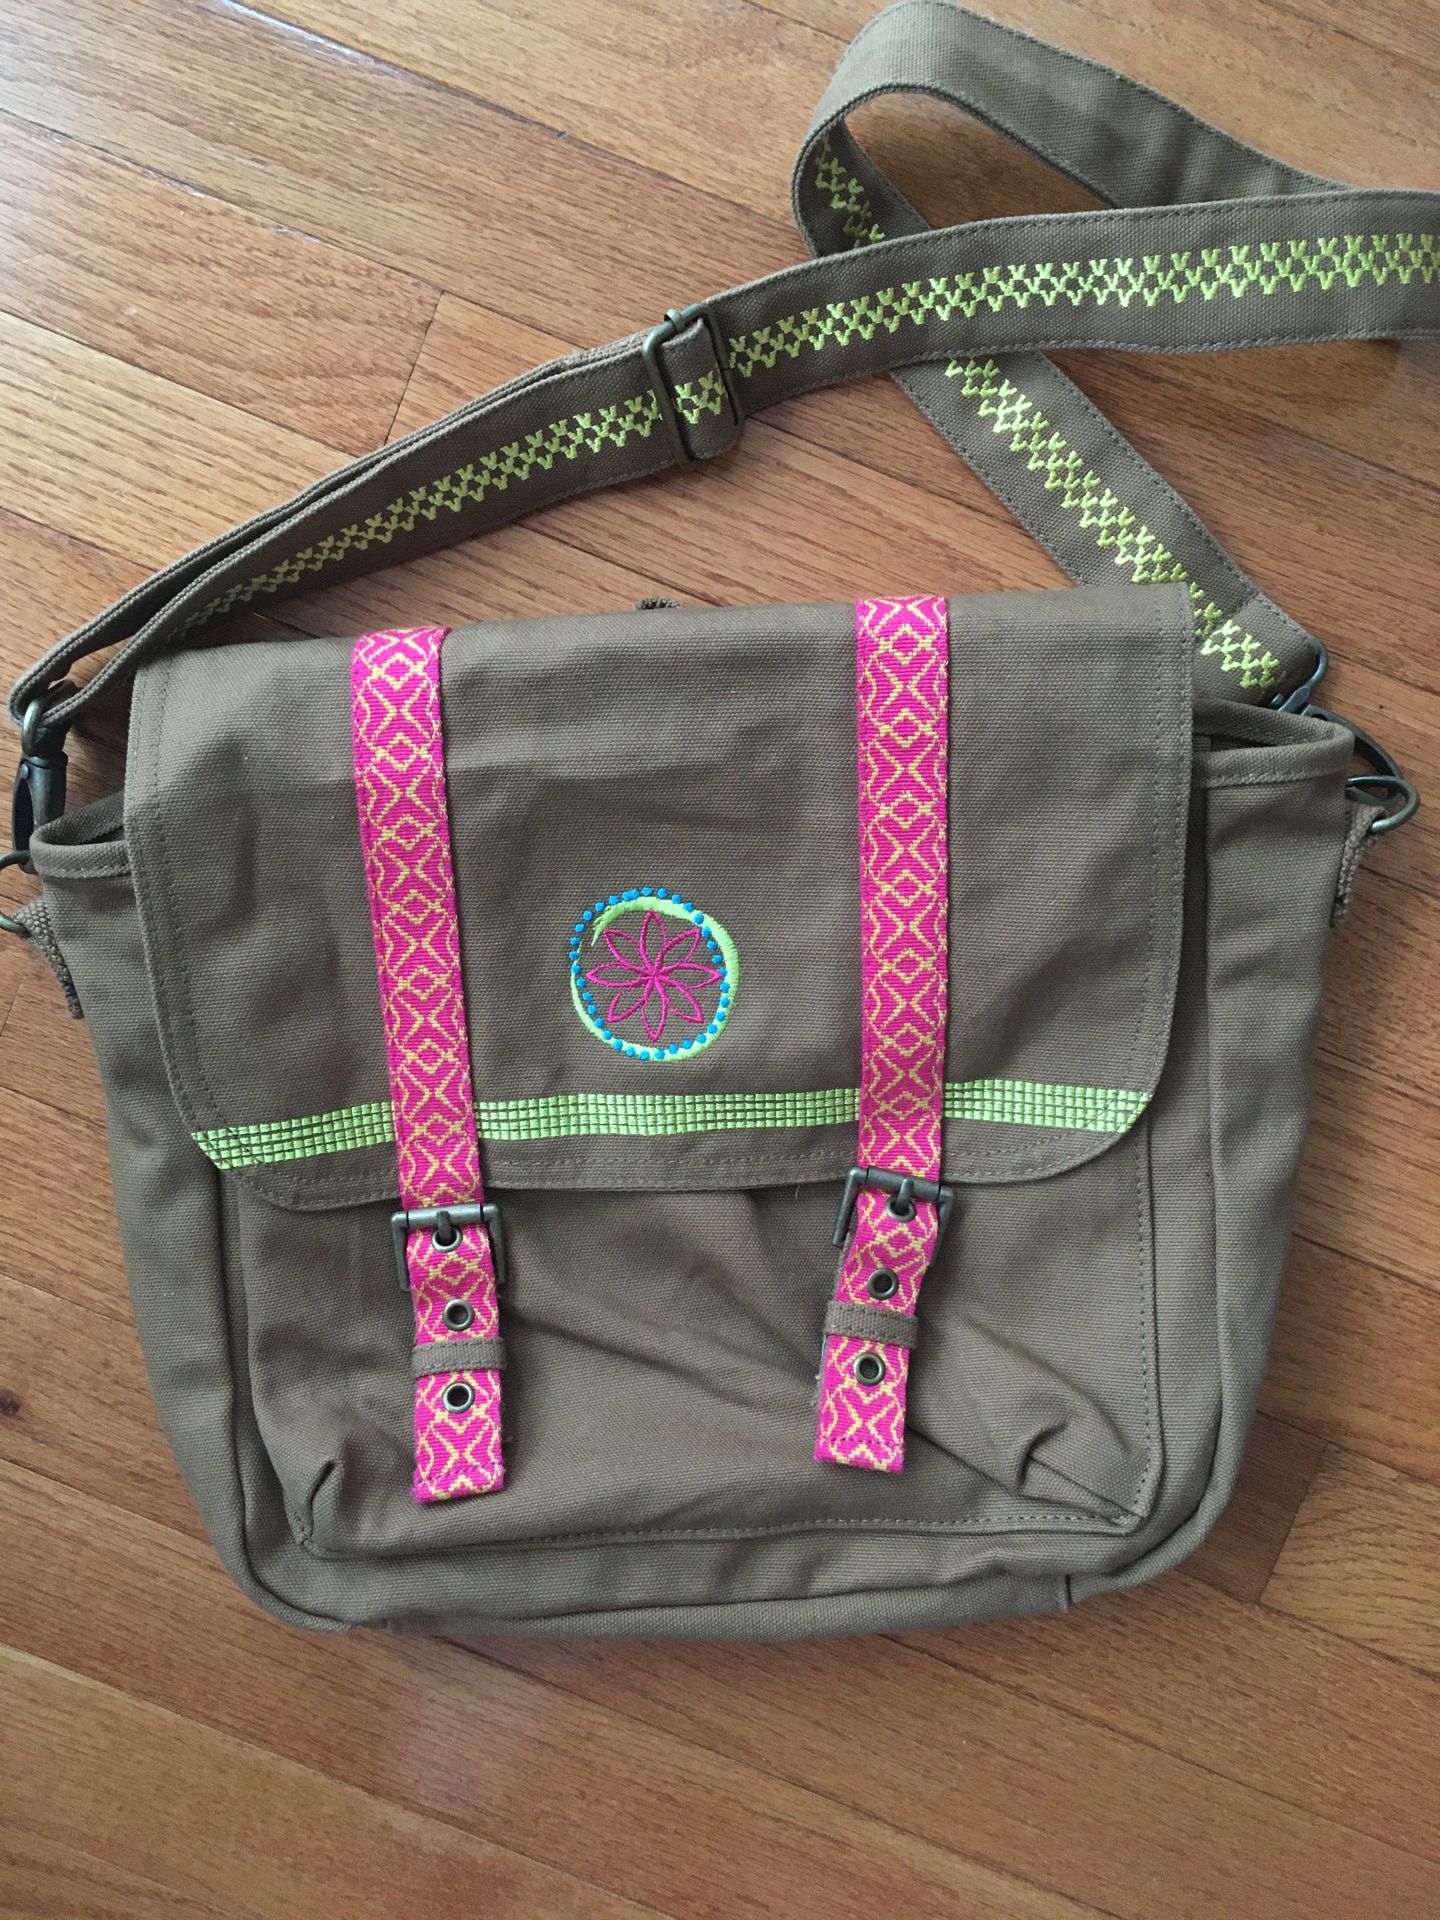 Like New American Girl Messenger bag for girls